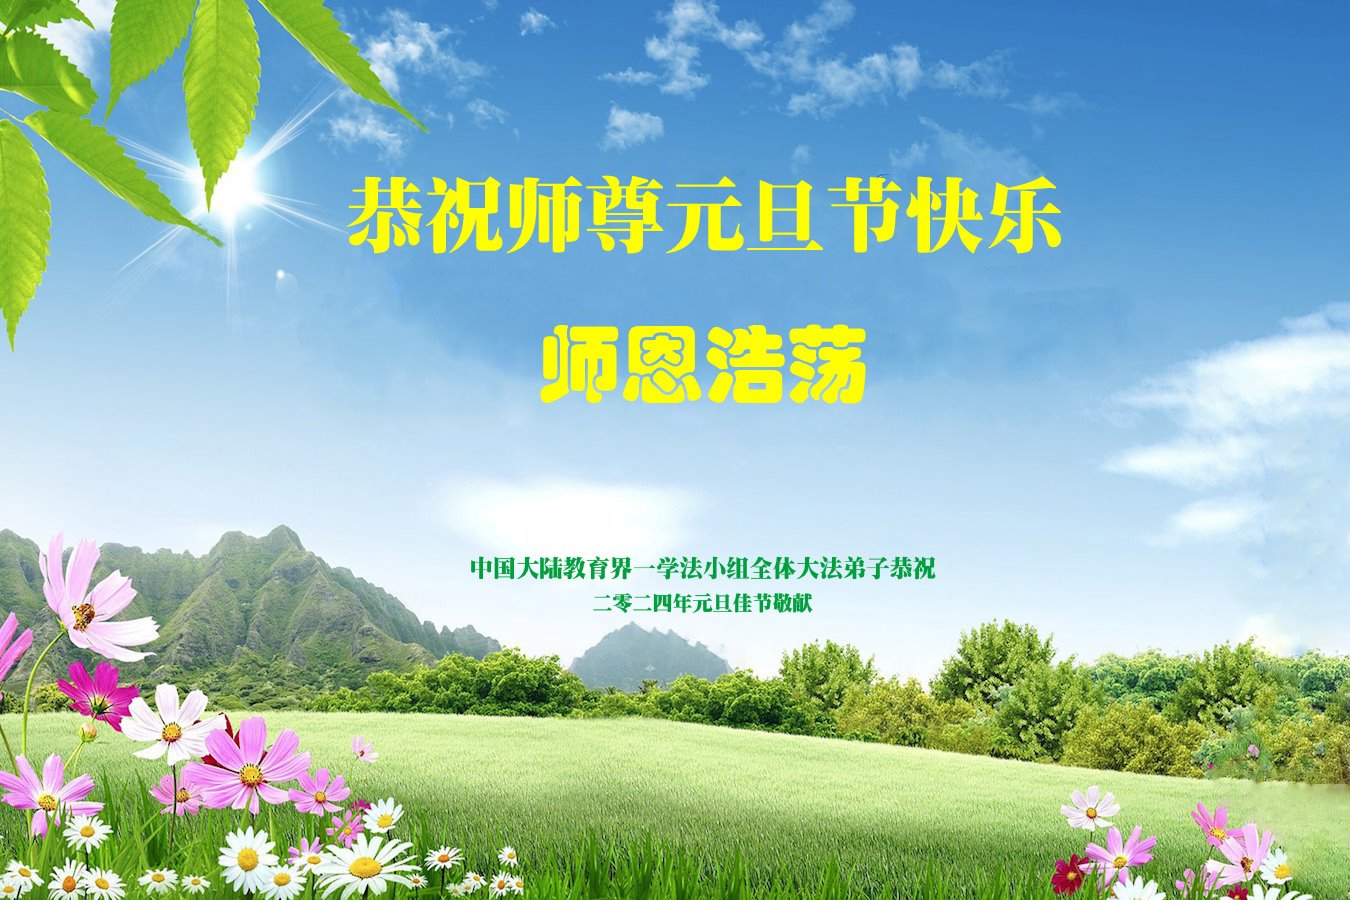 Image for article Les pratiquants de Falun Dafa du système éducatif chinois souhaitent une bonne année à Maître Li Hongzhi